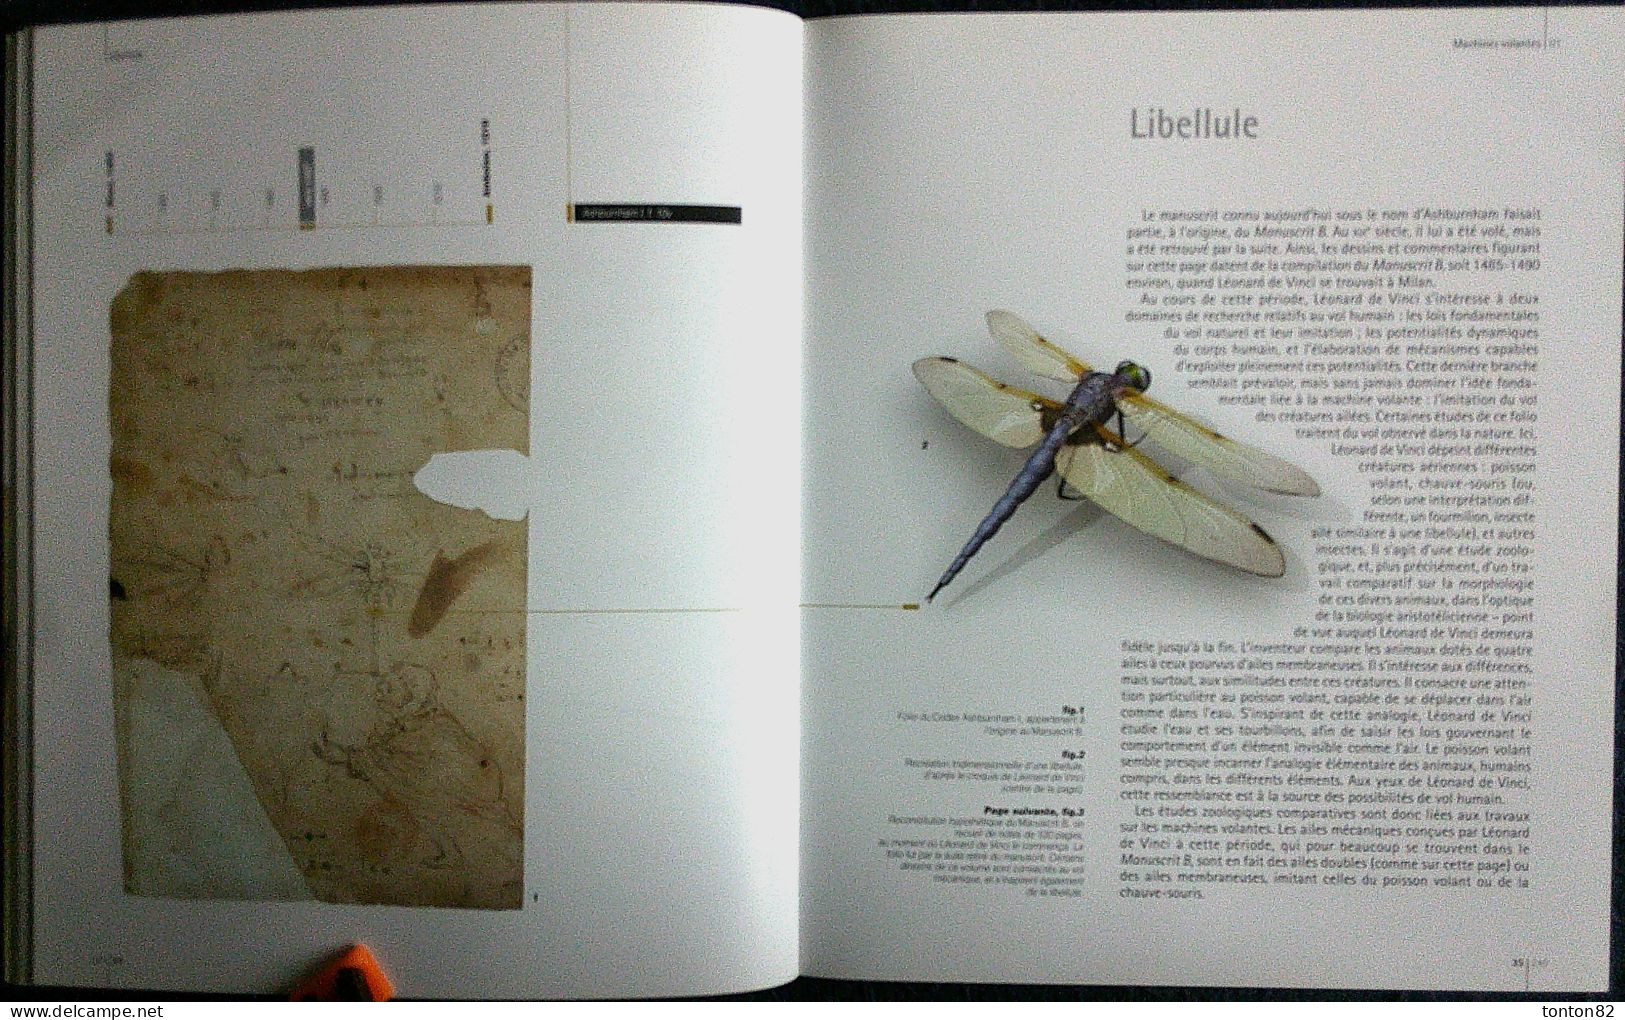 Les MACHINES de LÉONARD DE VINCI - Secrets et inventions des Codex - Éditions GRÜND - ( 2005 ) .